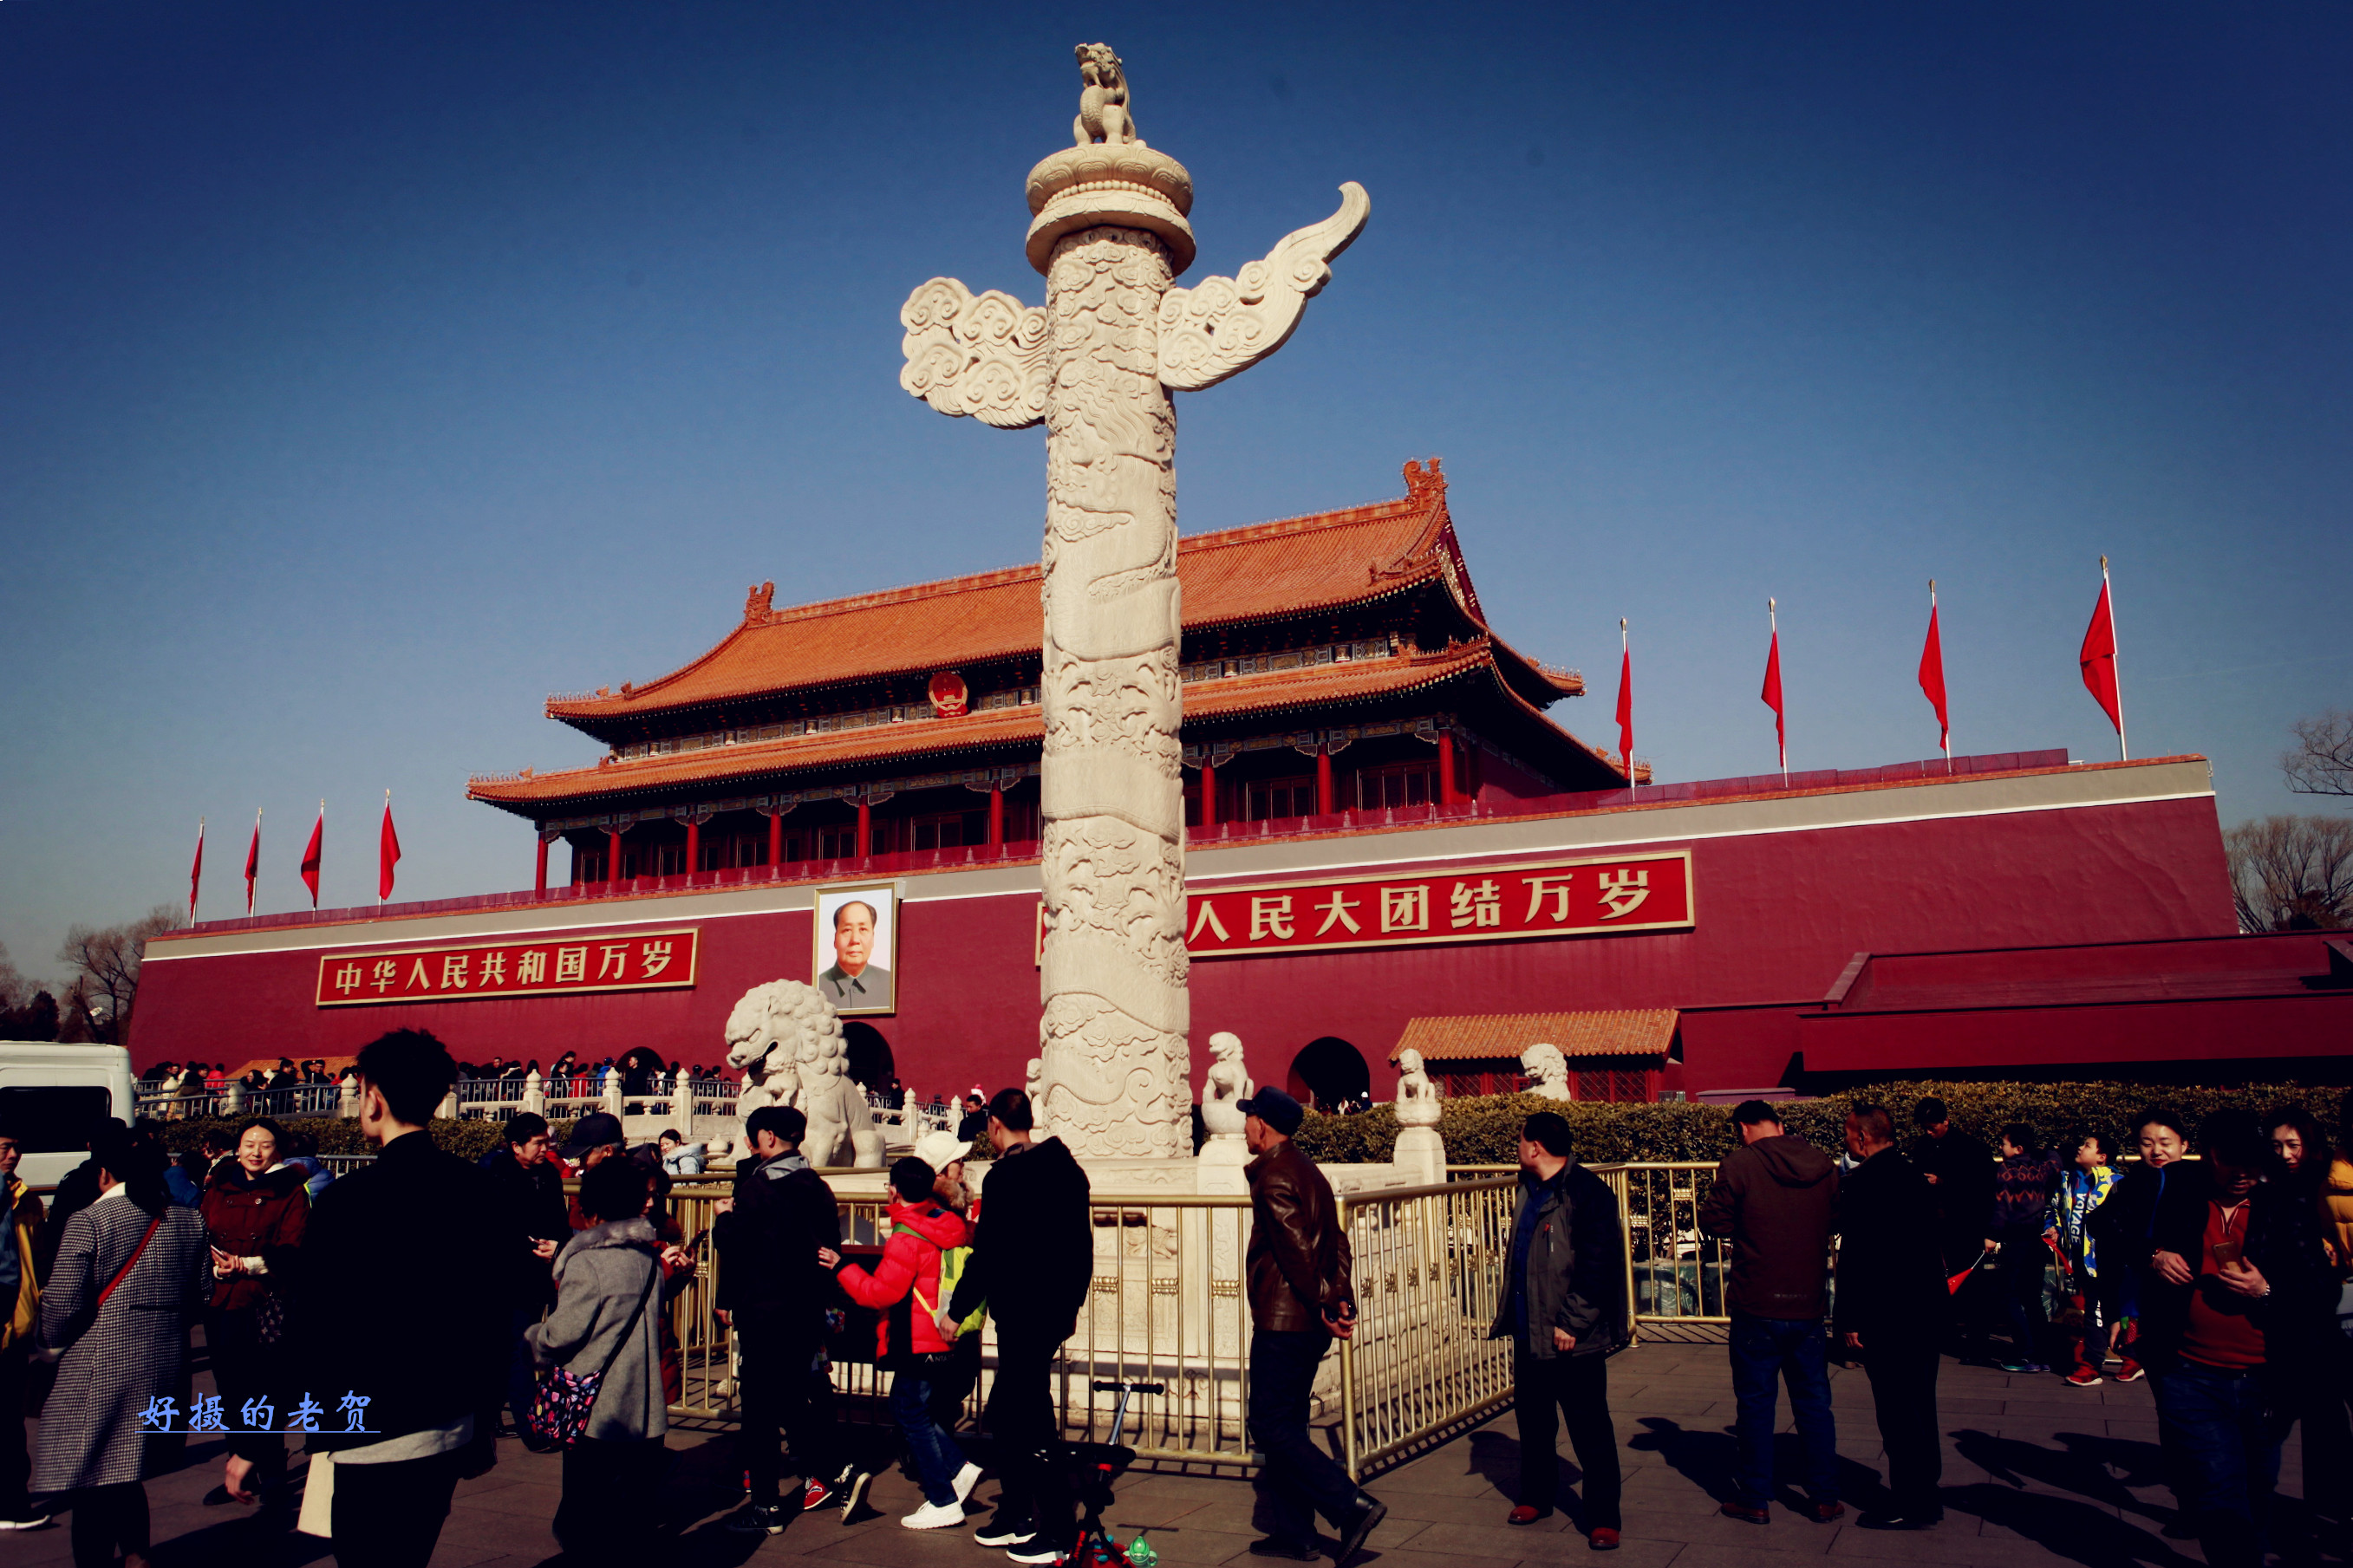 原创天天路过,仔细瞻仰天安门了吗?它,就是北京和中国的地标性建筑